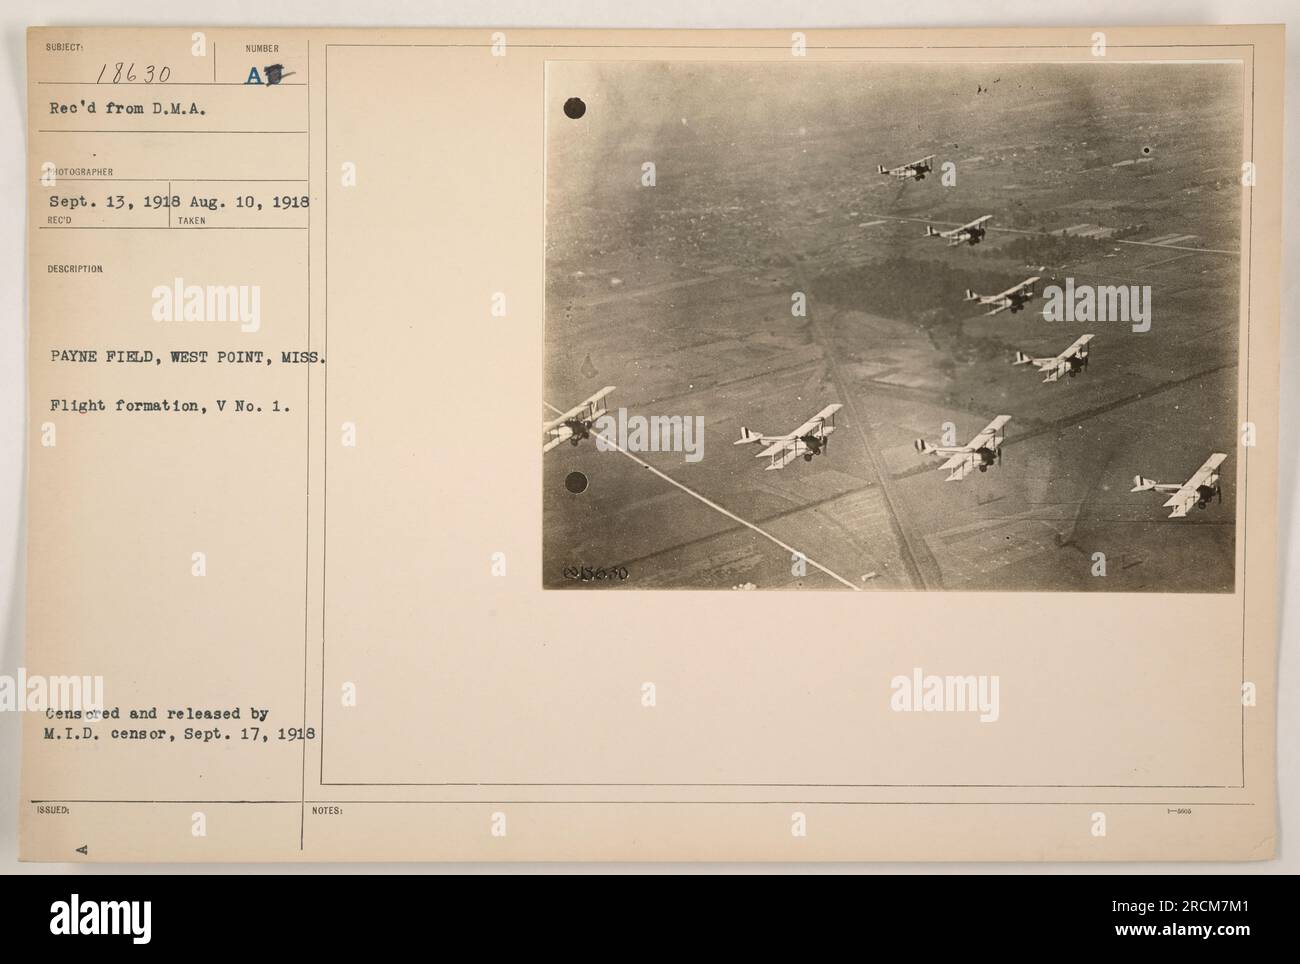 Flugformation am Payne Field in West Point, Mississippi. Das Foto wurde am 10. August 1918 aufgenommen und am 13. September 1918 von DMA-Fotografen erhalten. Am 17. September 1918 erhielt sie die Genehmigung des M.I.D. Zensors. Diese Abbildung zeigt eine V No. 1-Flugformation. Stockfoto